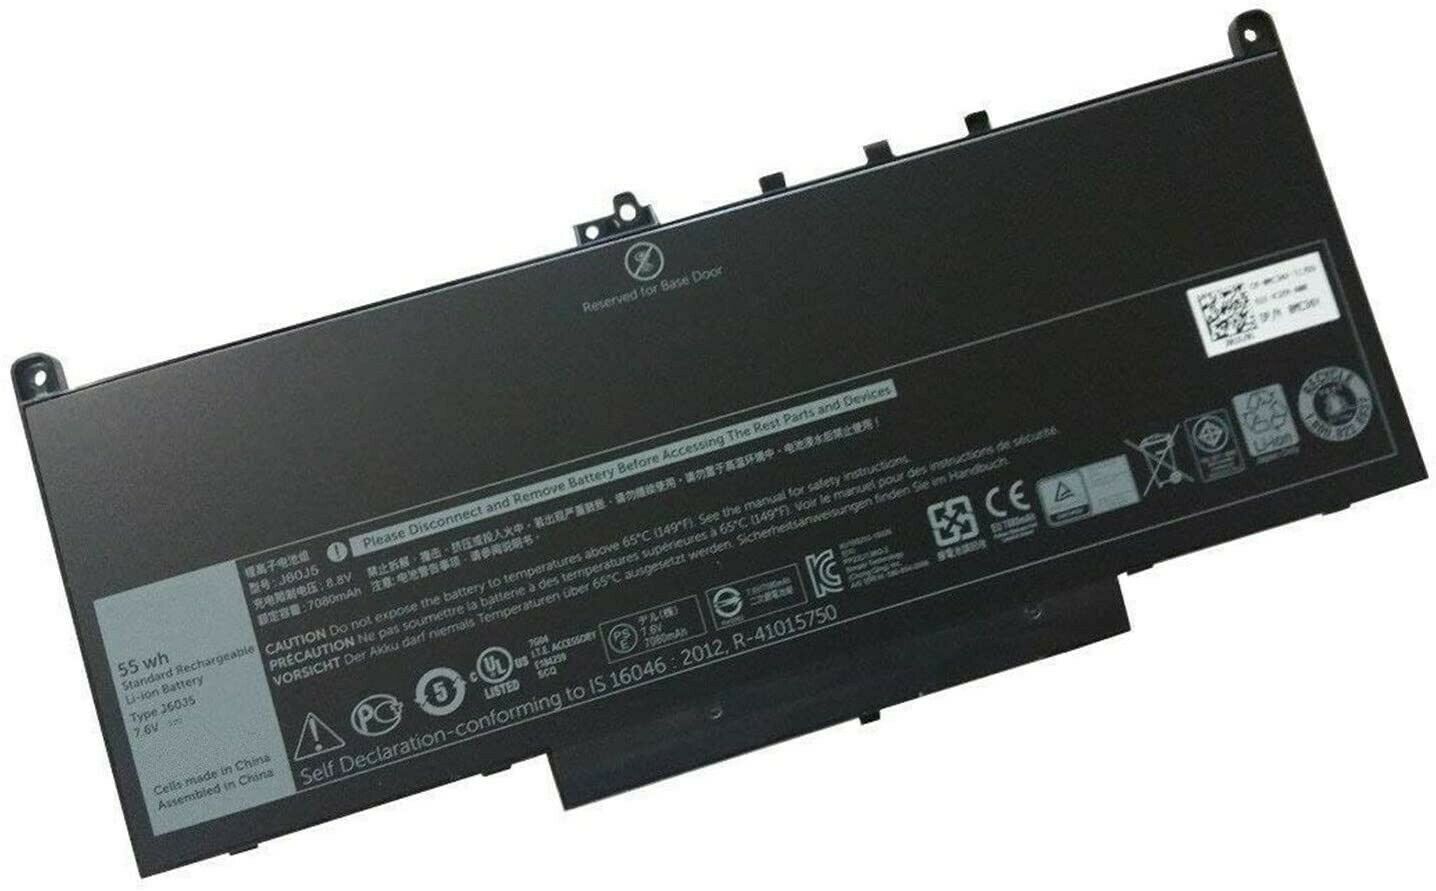 Batteri til Dell Latitude E7270,E7470 0MC34Y 242WD J60J5 MC34Y (kompatibelt) - Klik på billedet for at lukke